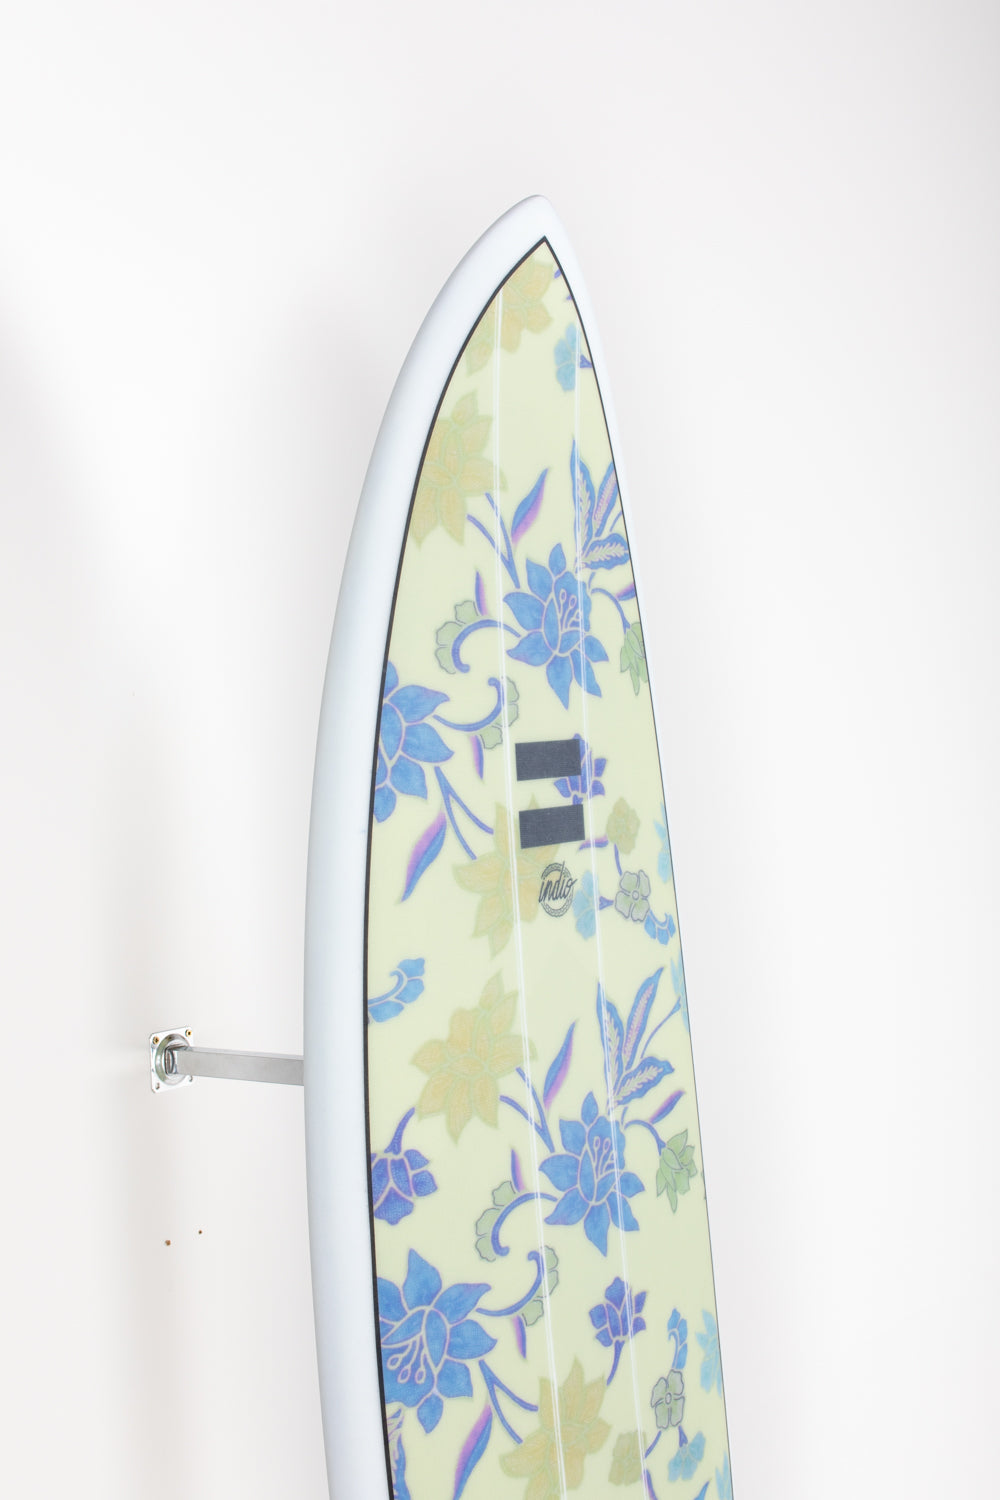 
                  
                    Pukas Surf Shop - Indio Endurance - THE EGG Flowers - 7´2 x 21 3/4 x 2 3/4 - 50L
                  
                